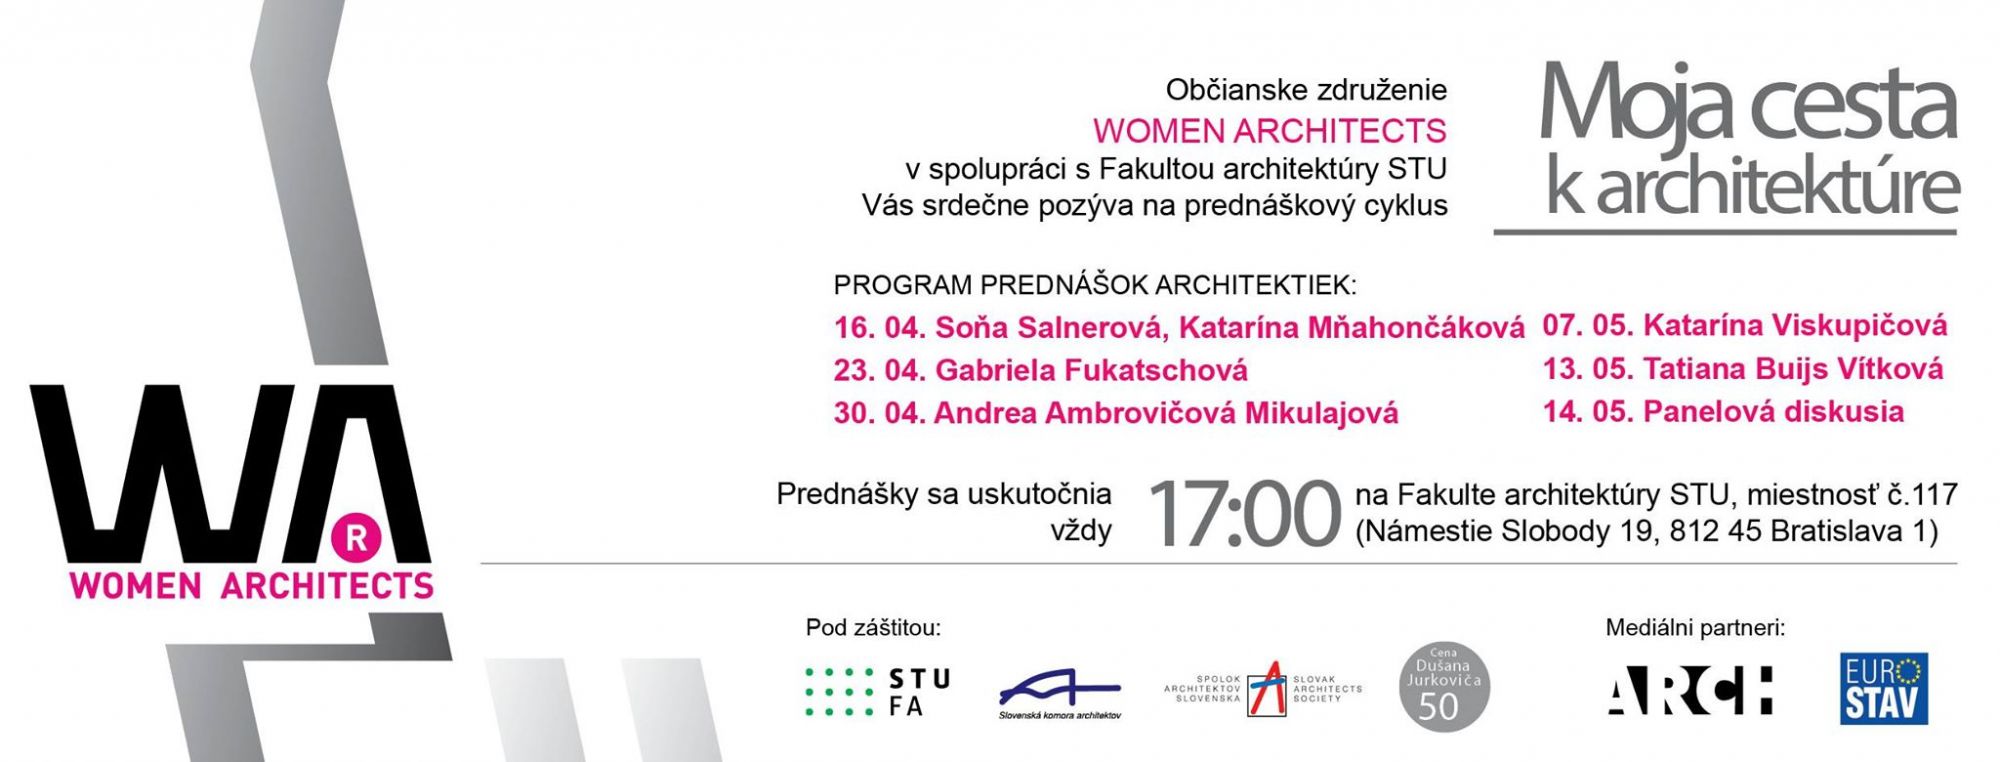 woman architects - prednášky